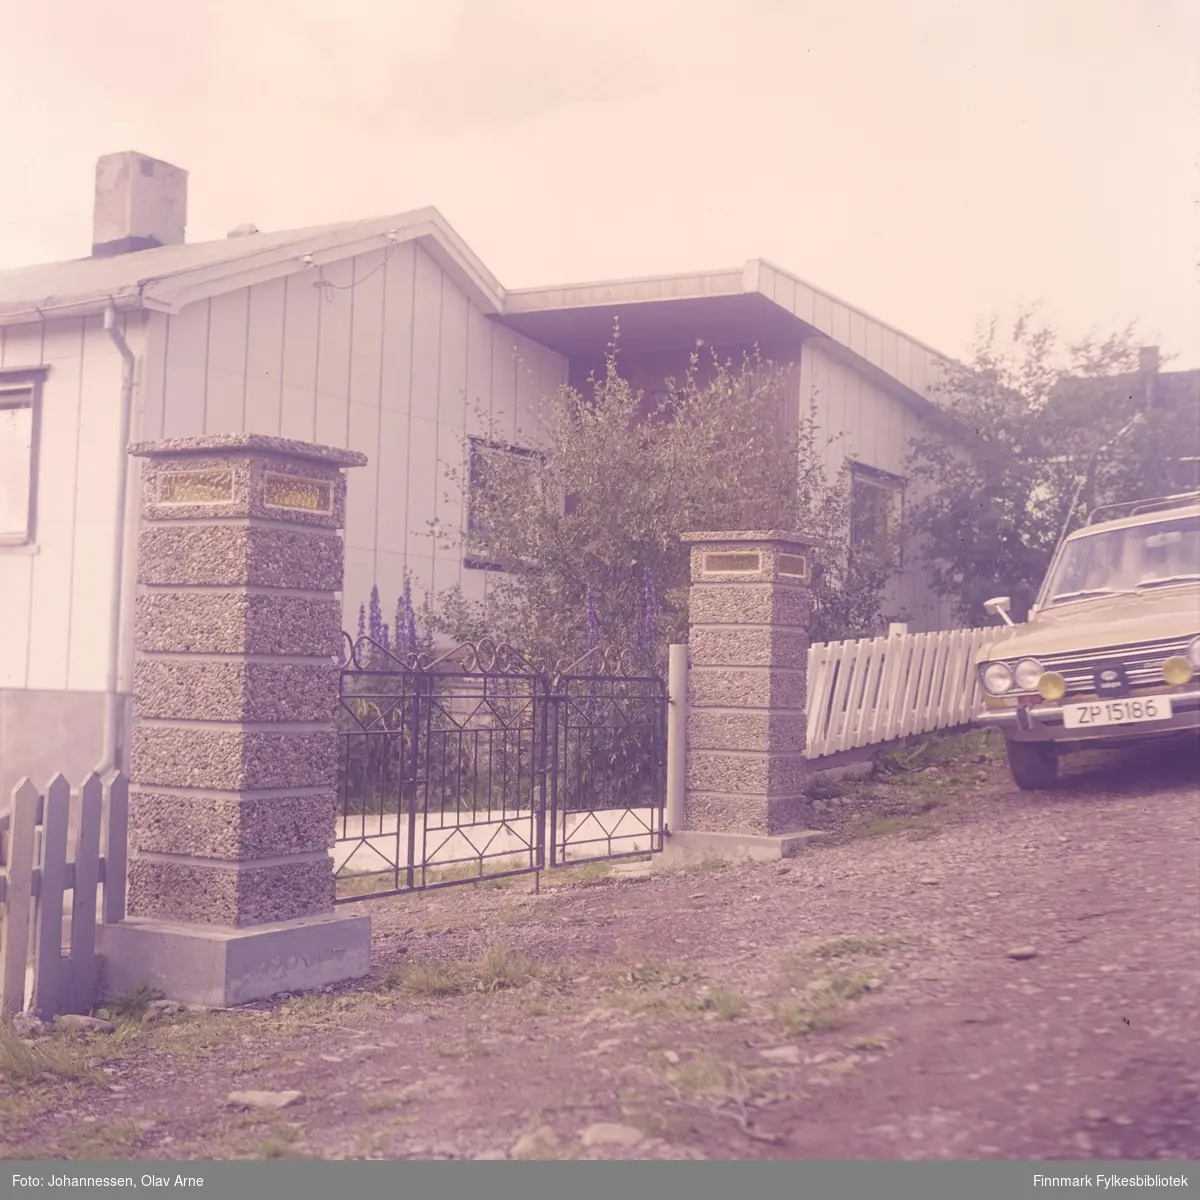 Foto av huset til malermester (husmaler) Odd Walderhaug og kone Doris Walderhaug i Båtsfjord

Dagens Ravnevegen 2

Bil til høyre er en Datsun (Nissan) som har skiltnummer ZP 15186

Foto trolig tatt på 1960/70-tallet